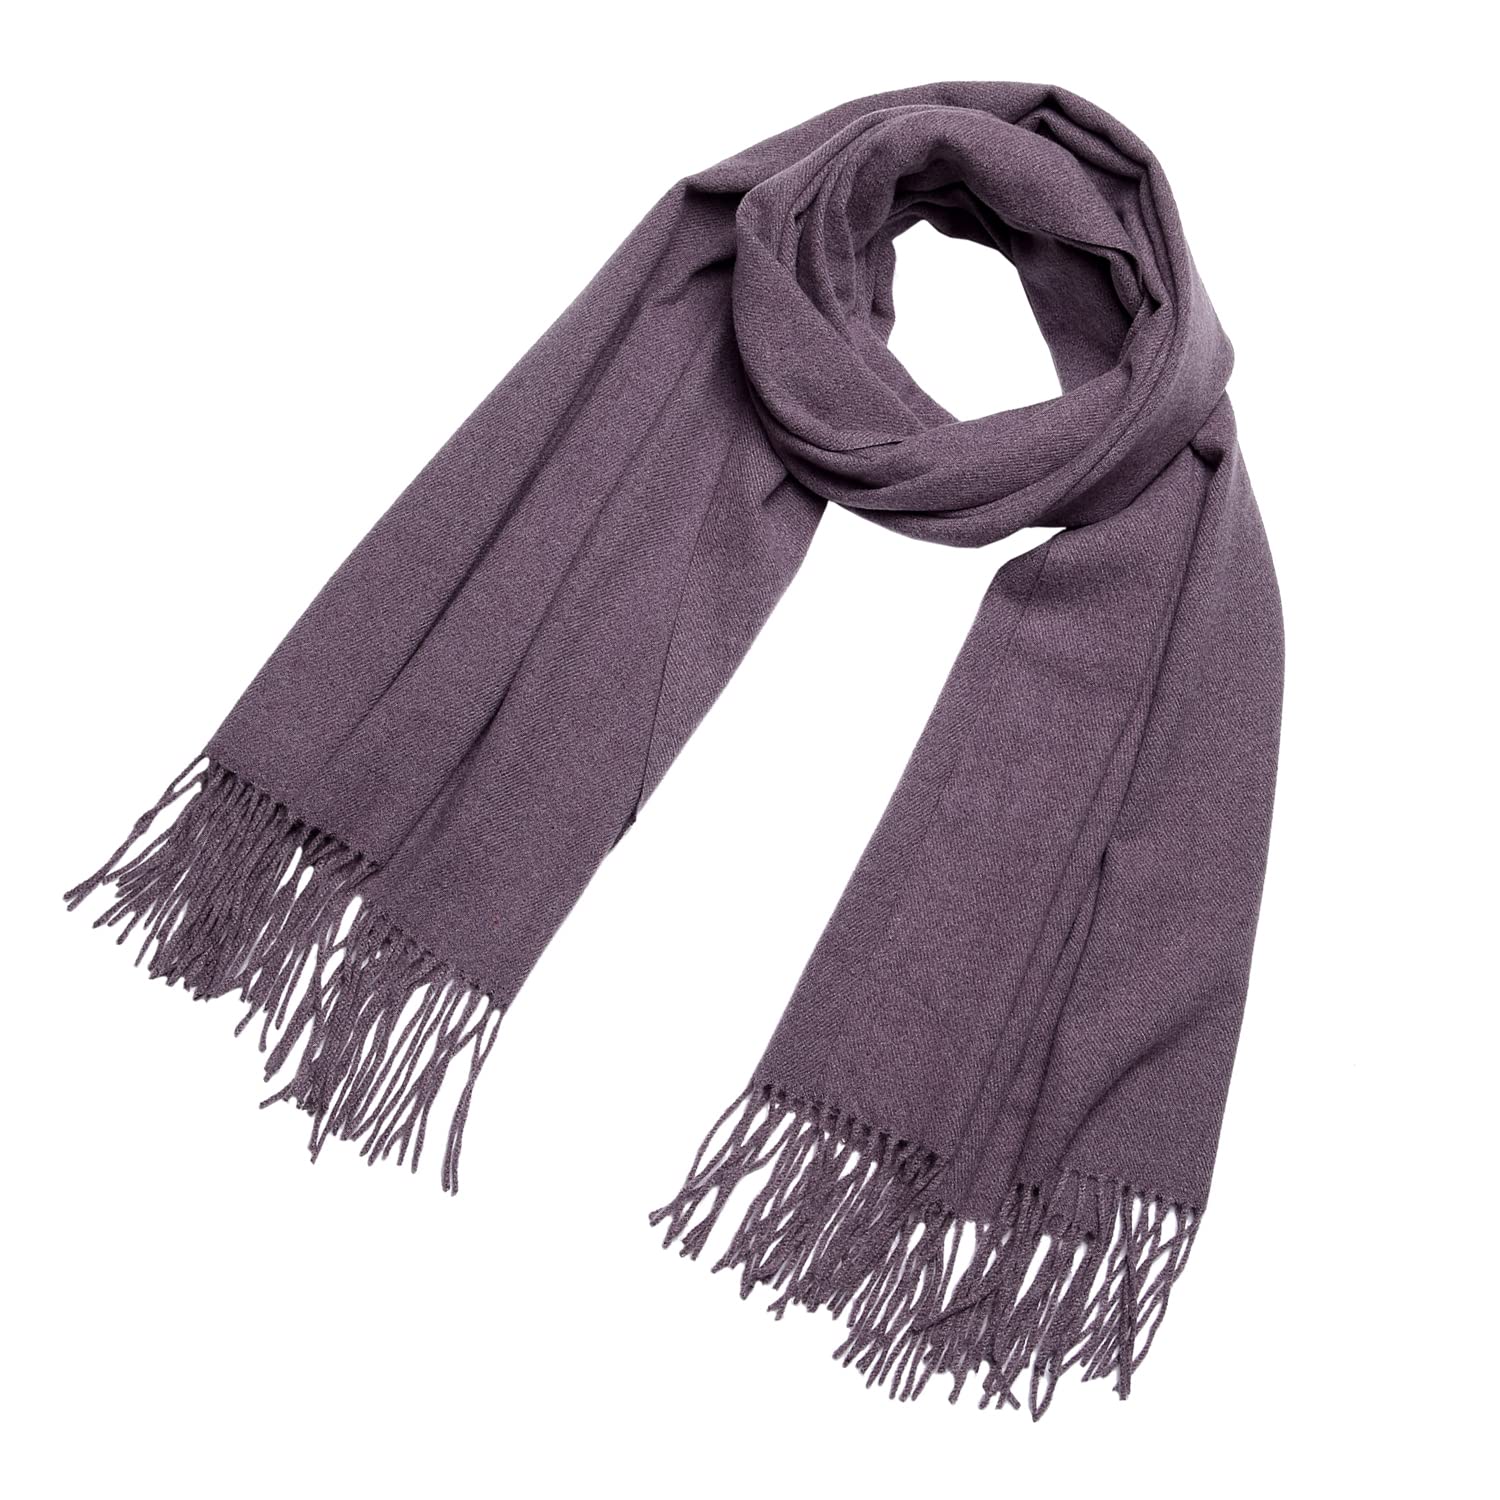 DonDon Schal Damen Winter Wollschal Winterschal groß und flauschig 200 x 70 cm - Violett